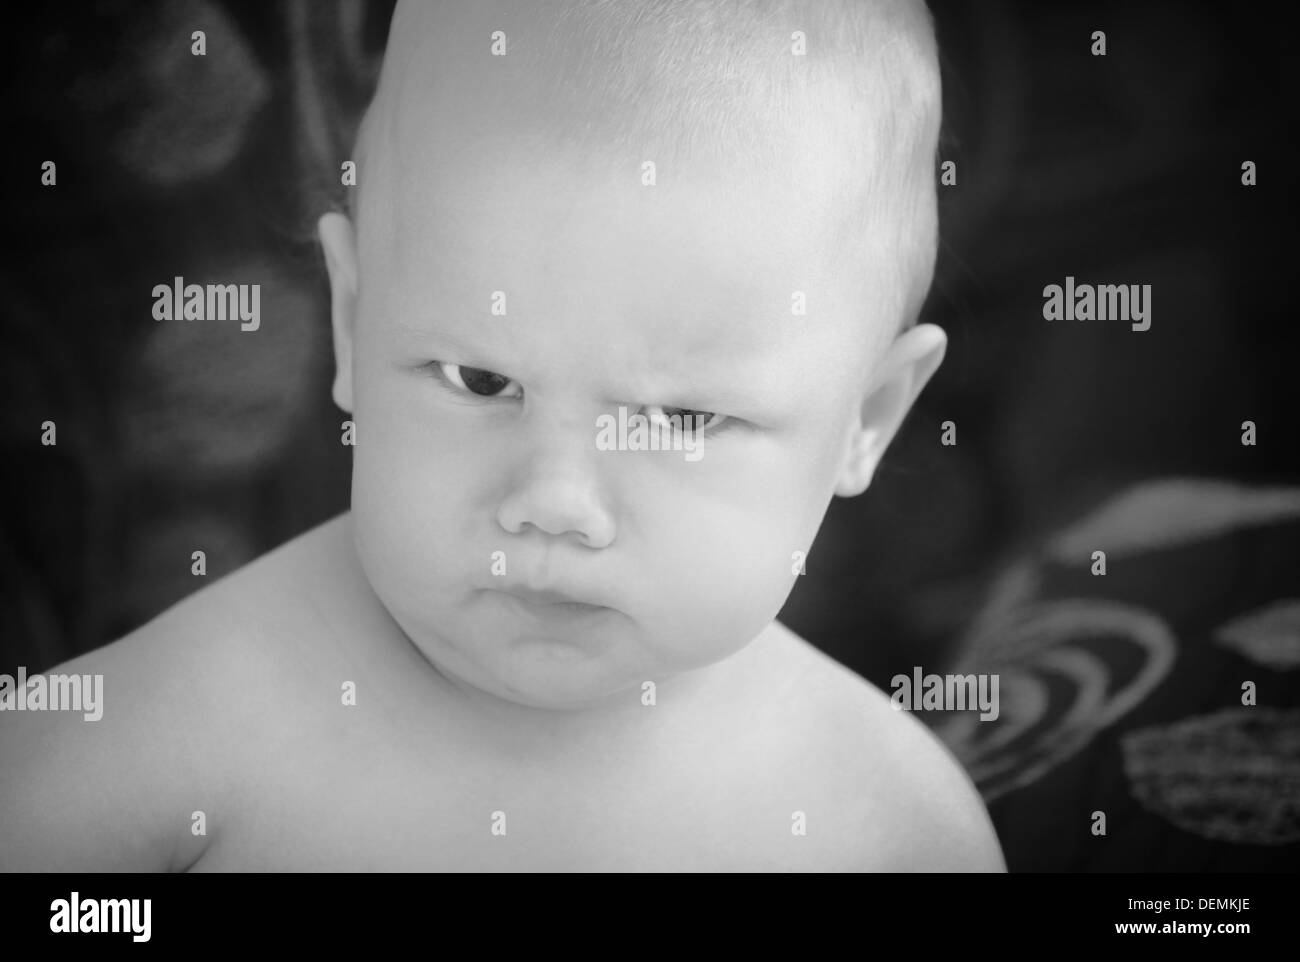 Lustige böse Baby Mädchen Nahaufnahme monochrome Portrait auf dunklen Hintergrund jedoch unscharf Stockfoto